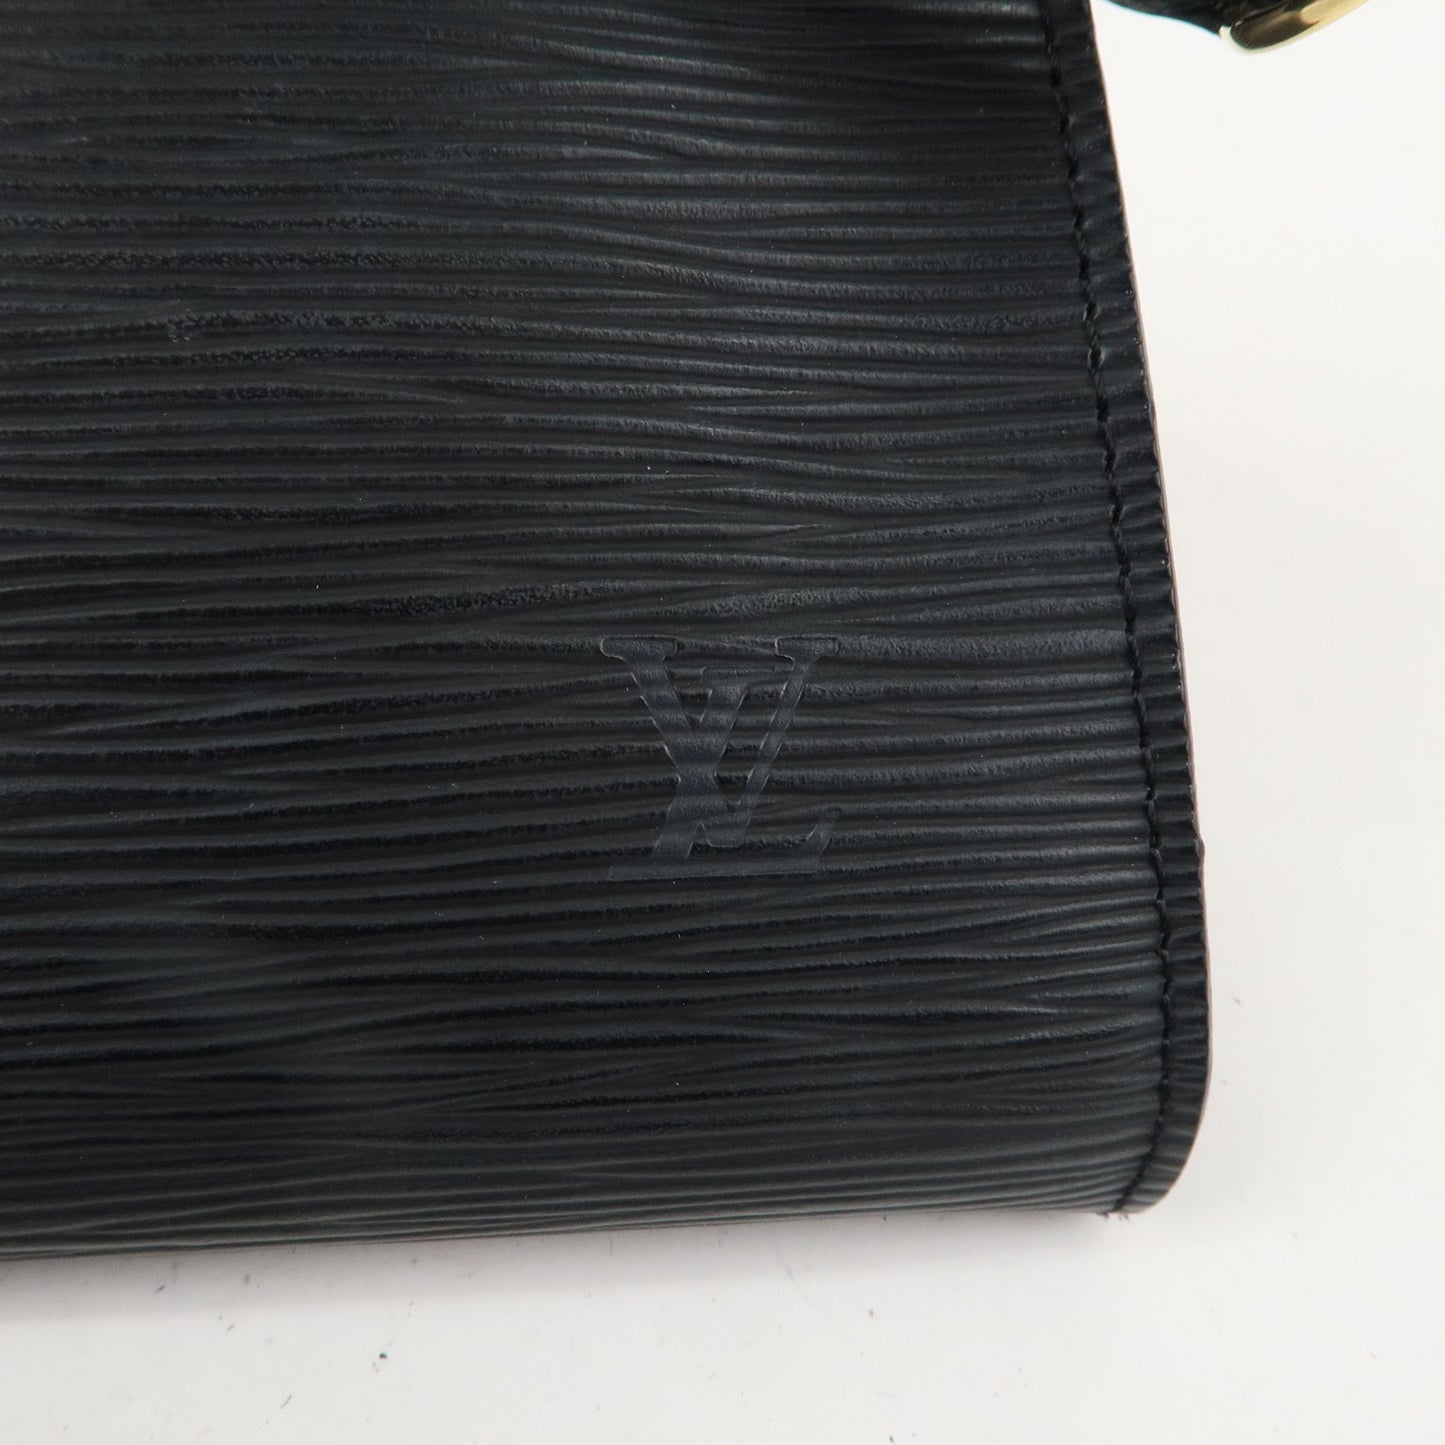 Louis Vuitton Epi Pochette Accessoires Pouch Noir Black M52942